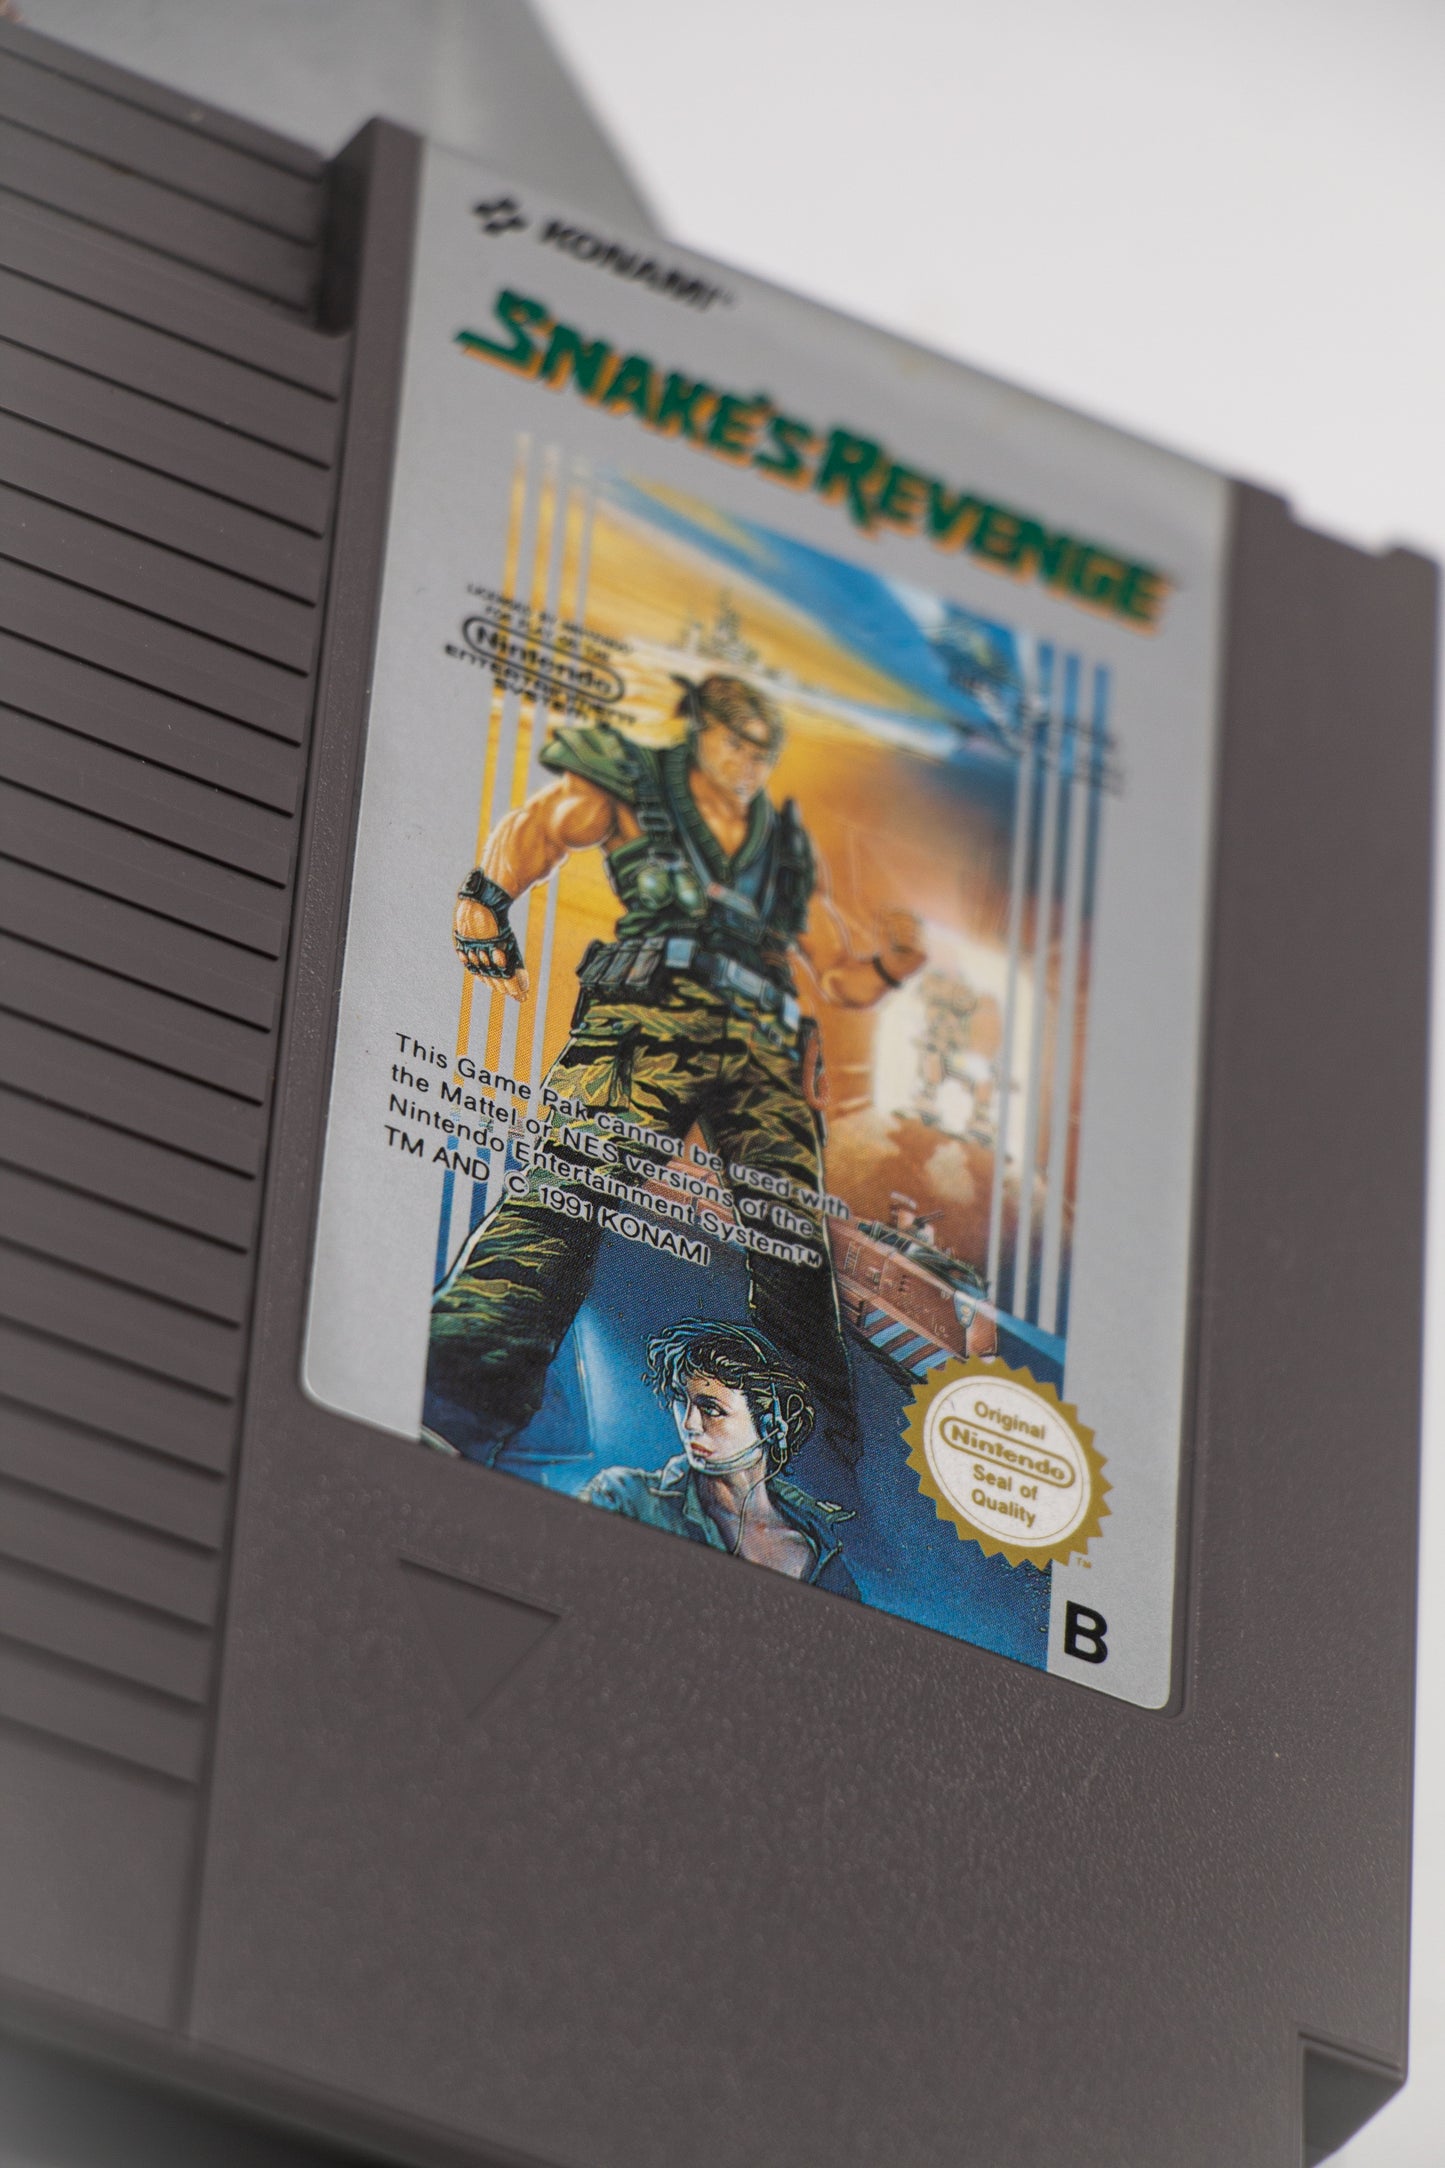 Snake's Revenge NES Cartridge and Manual